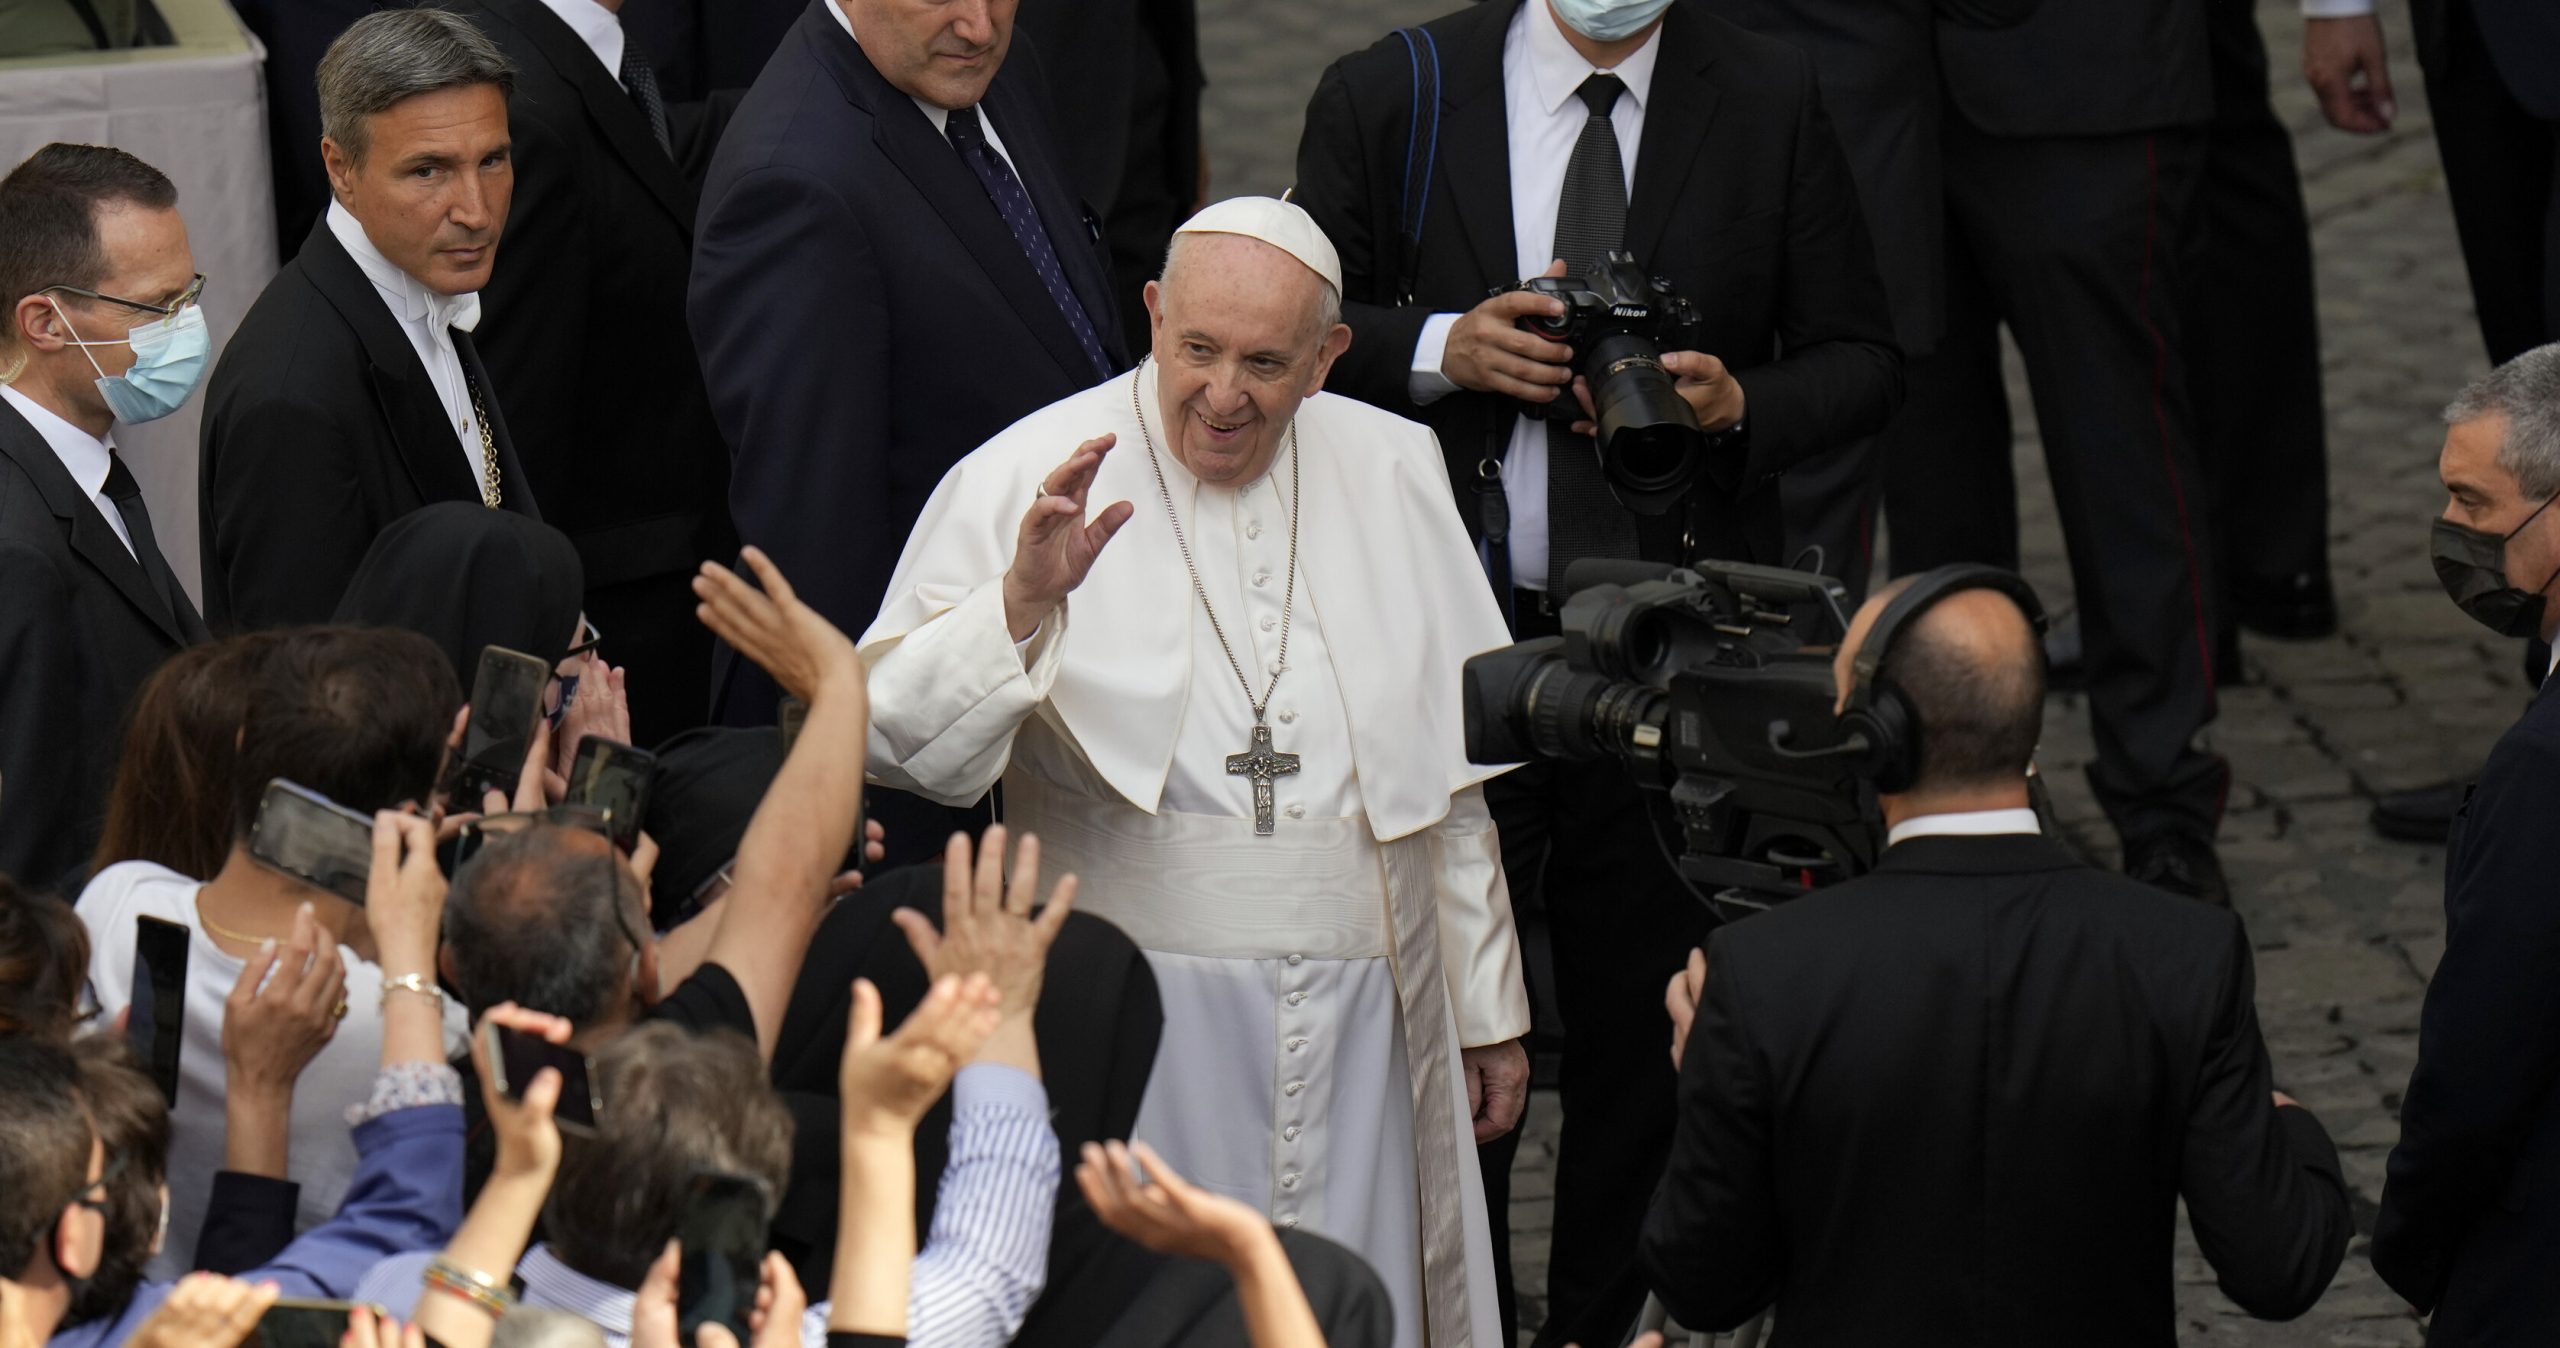 Papa Francisc rămâne internat timp de 7 zile după intervenția chirurgicală prin care i-a fost extirpată o secțiune a colonului